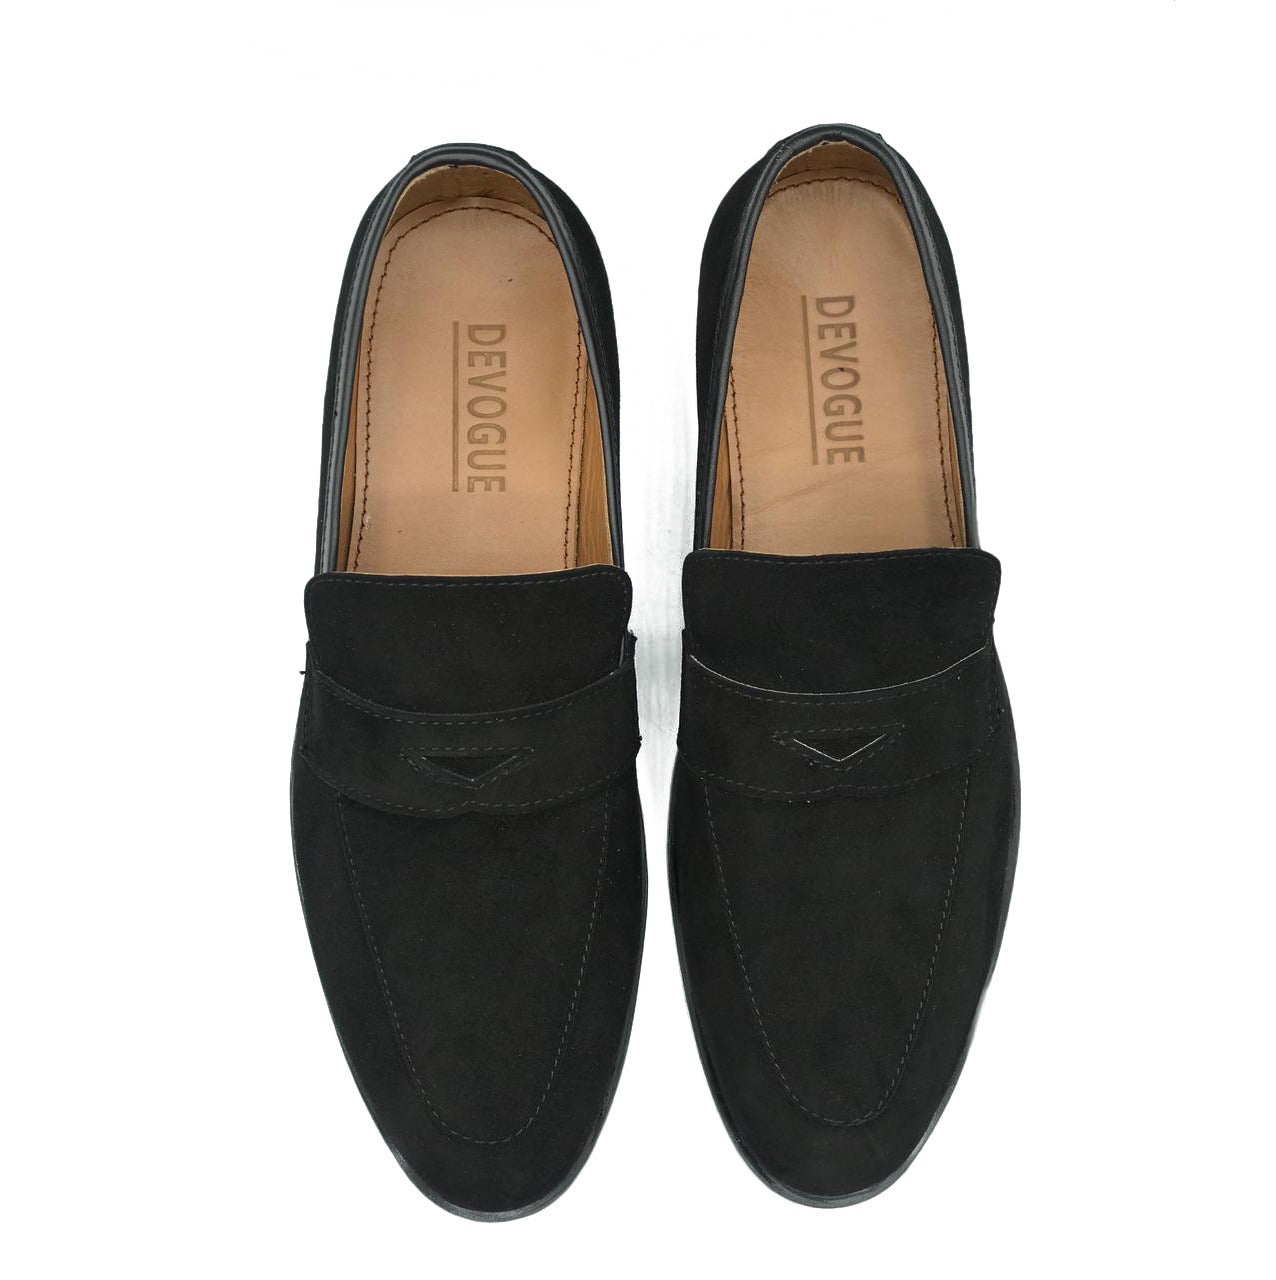 Forlænge hvile velfærd 5002-Black Suede Cow Leather Formal Loafer Style – DeVogue